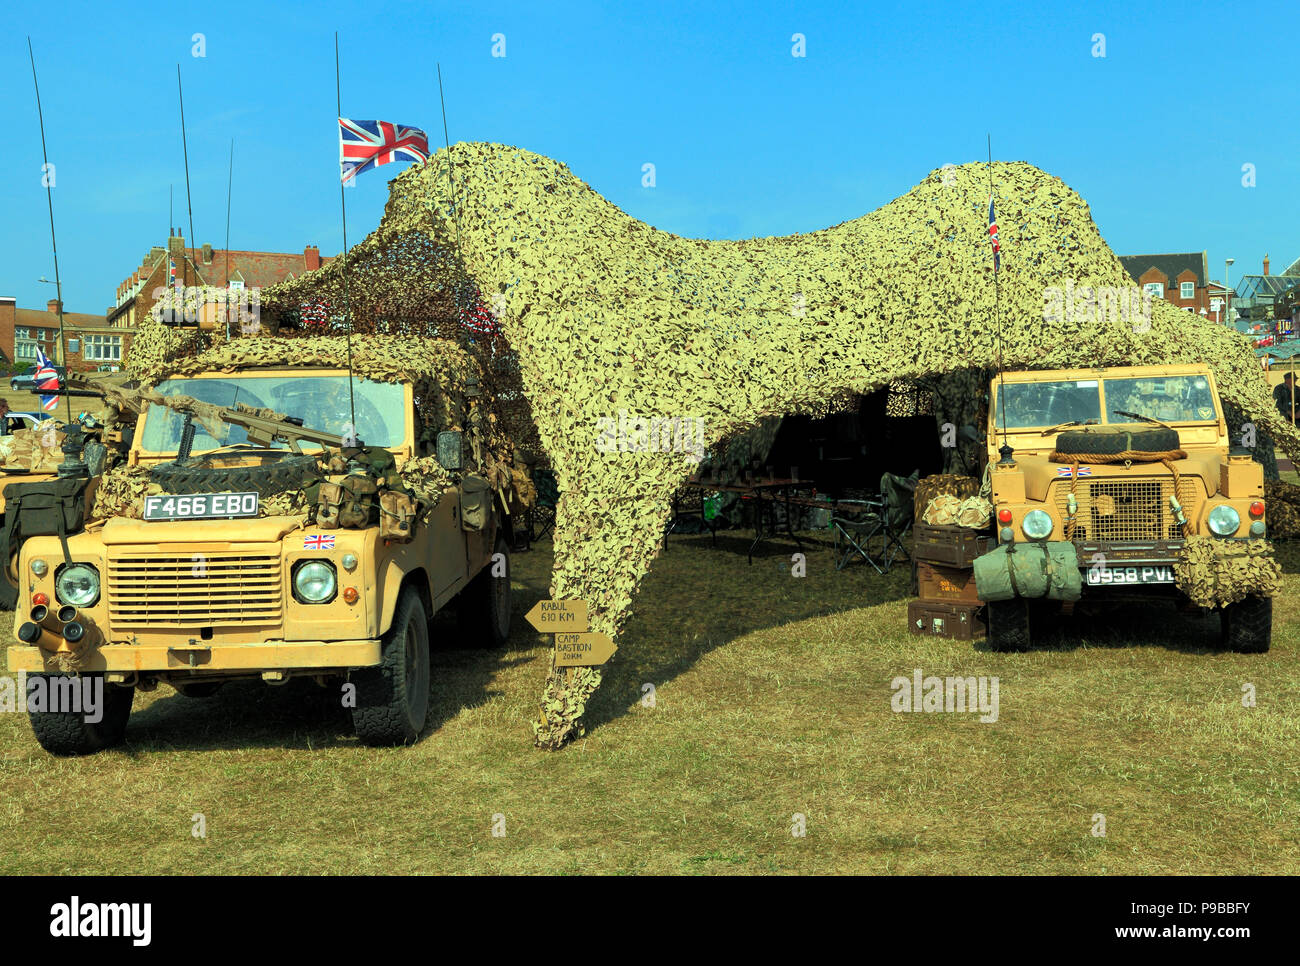 Britische Militär Fahrzeuge, Jeep, Panzerwagen, Camouflage Zelt, 1980 vinatage, der auch in Afghanistan Krieg verwendet Stockfoto